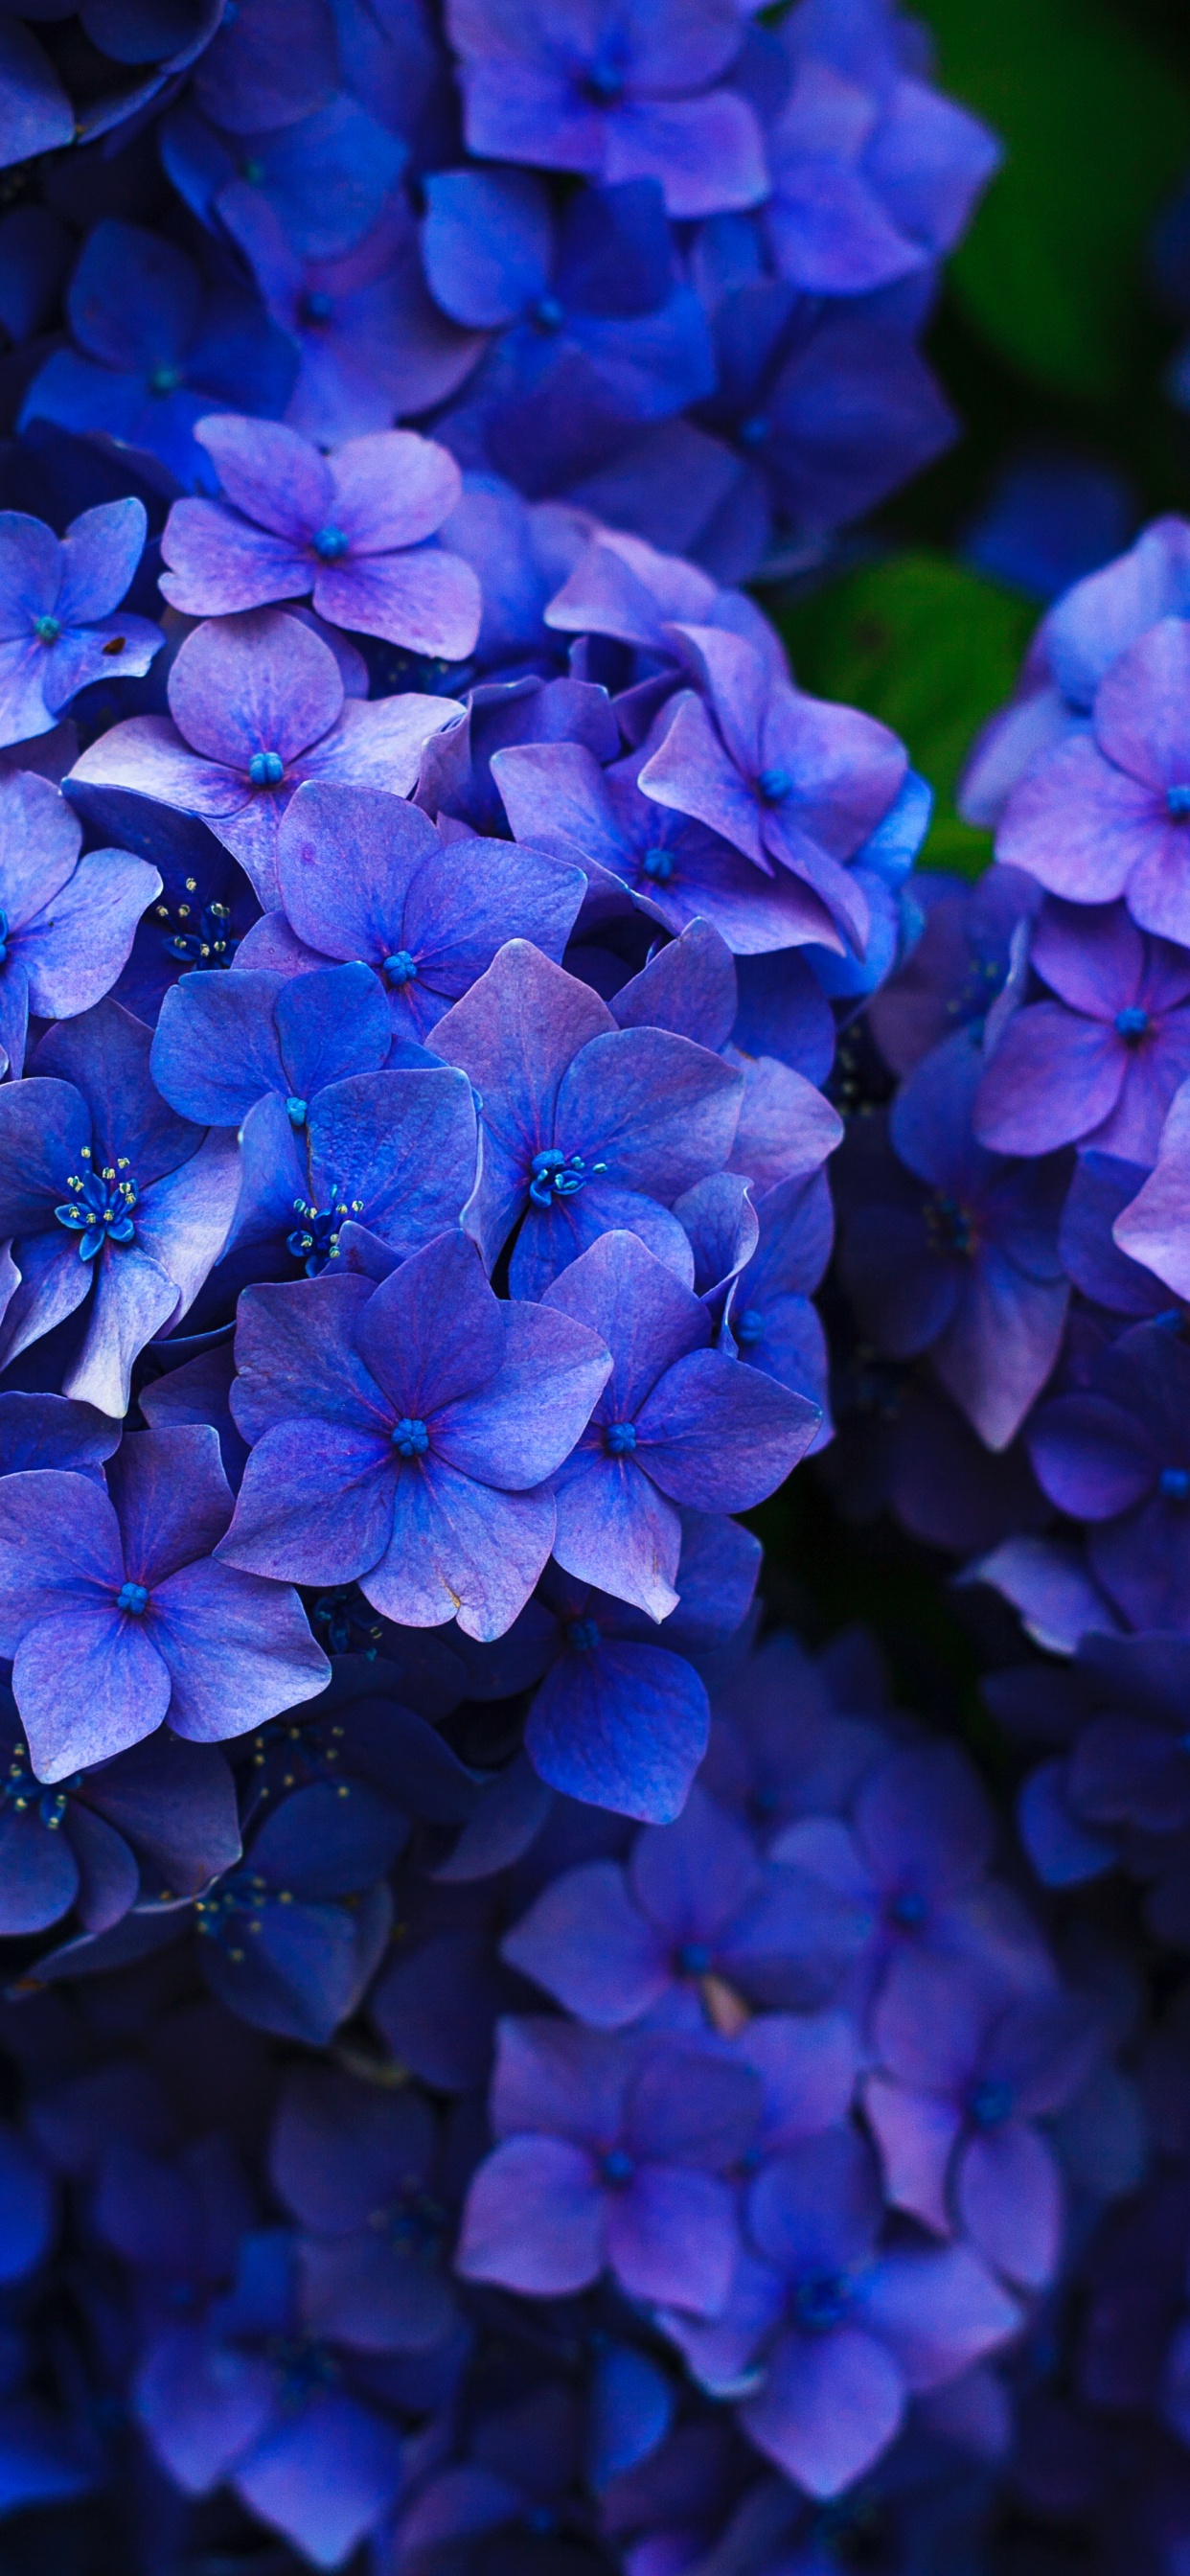 法国的绣球花, 灌木, 钴蓝色的, 紫色的, 紫罗兰色 壁纸 1242x2688 允许